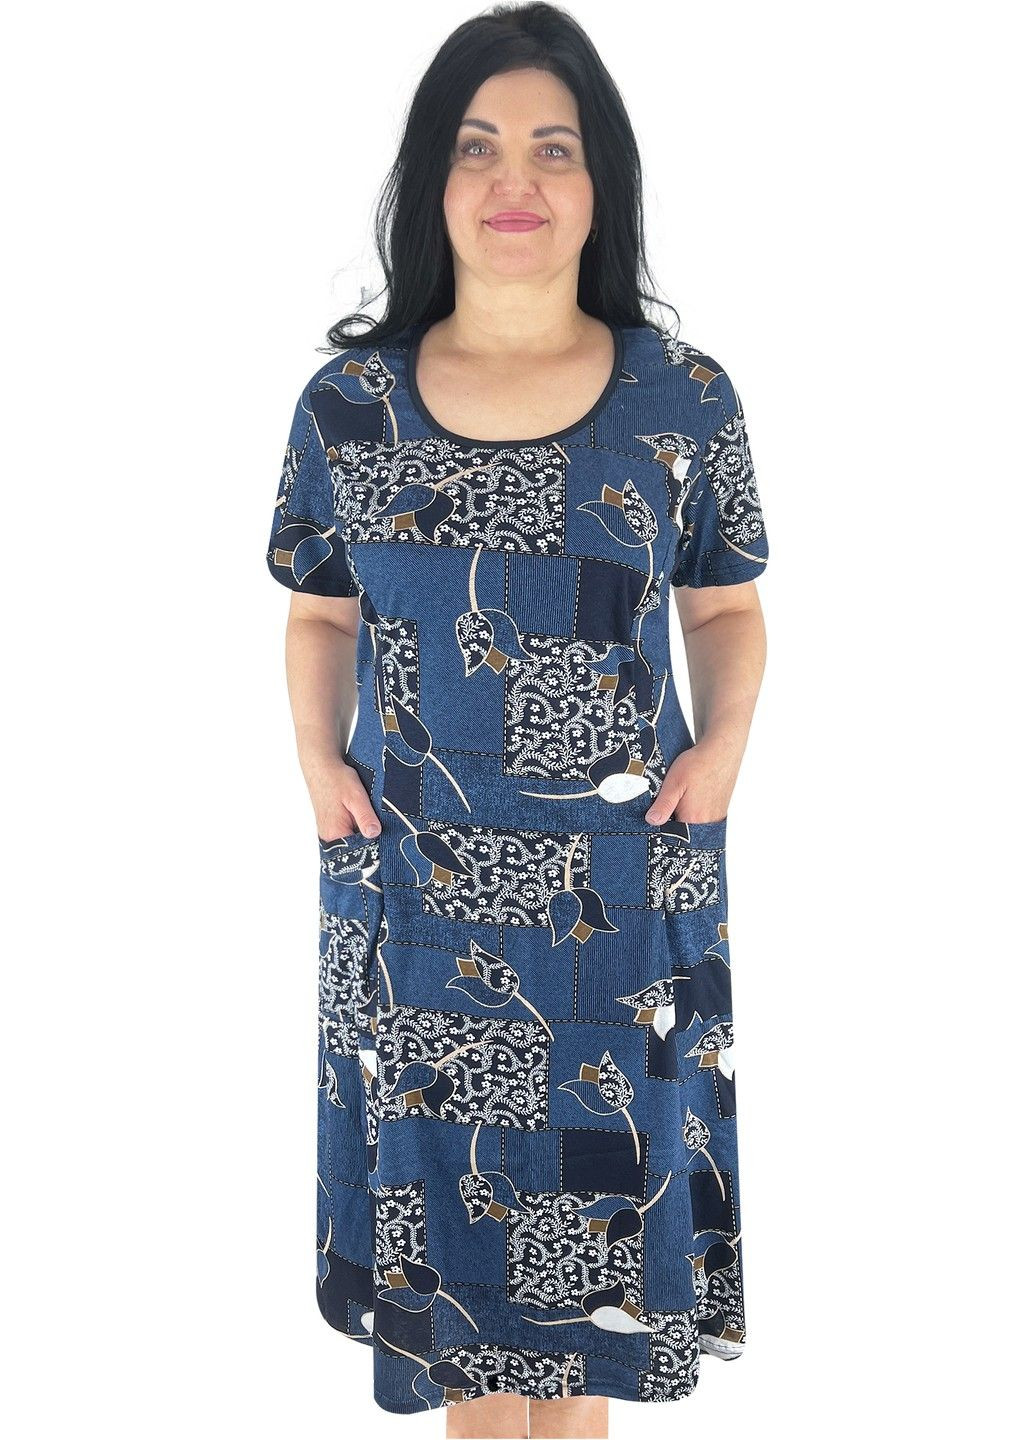 Світло-синя повсякденний, домашній сукня жіноча Жемчужина стилей з квітковим принтом